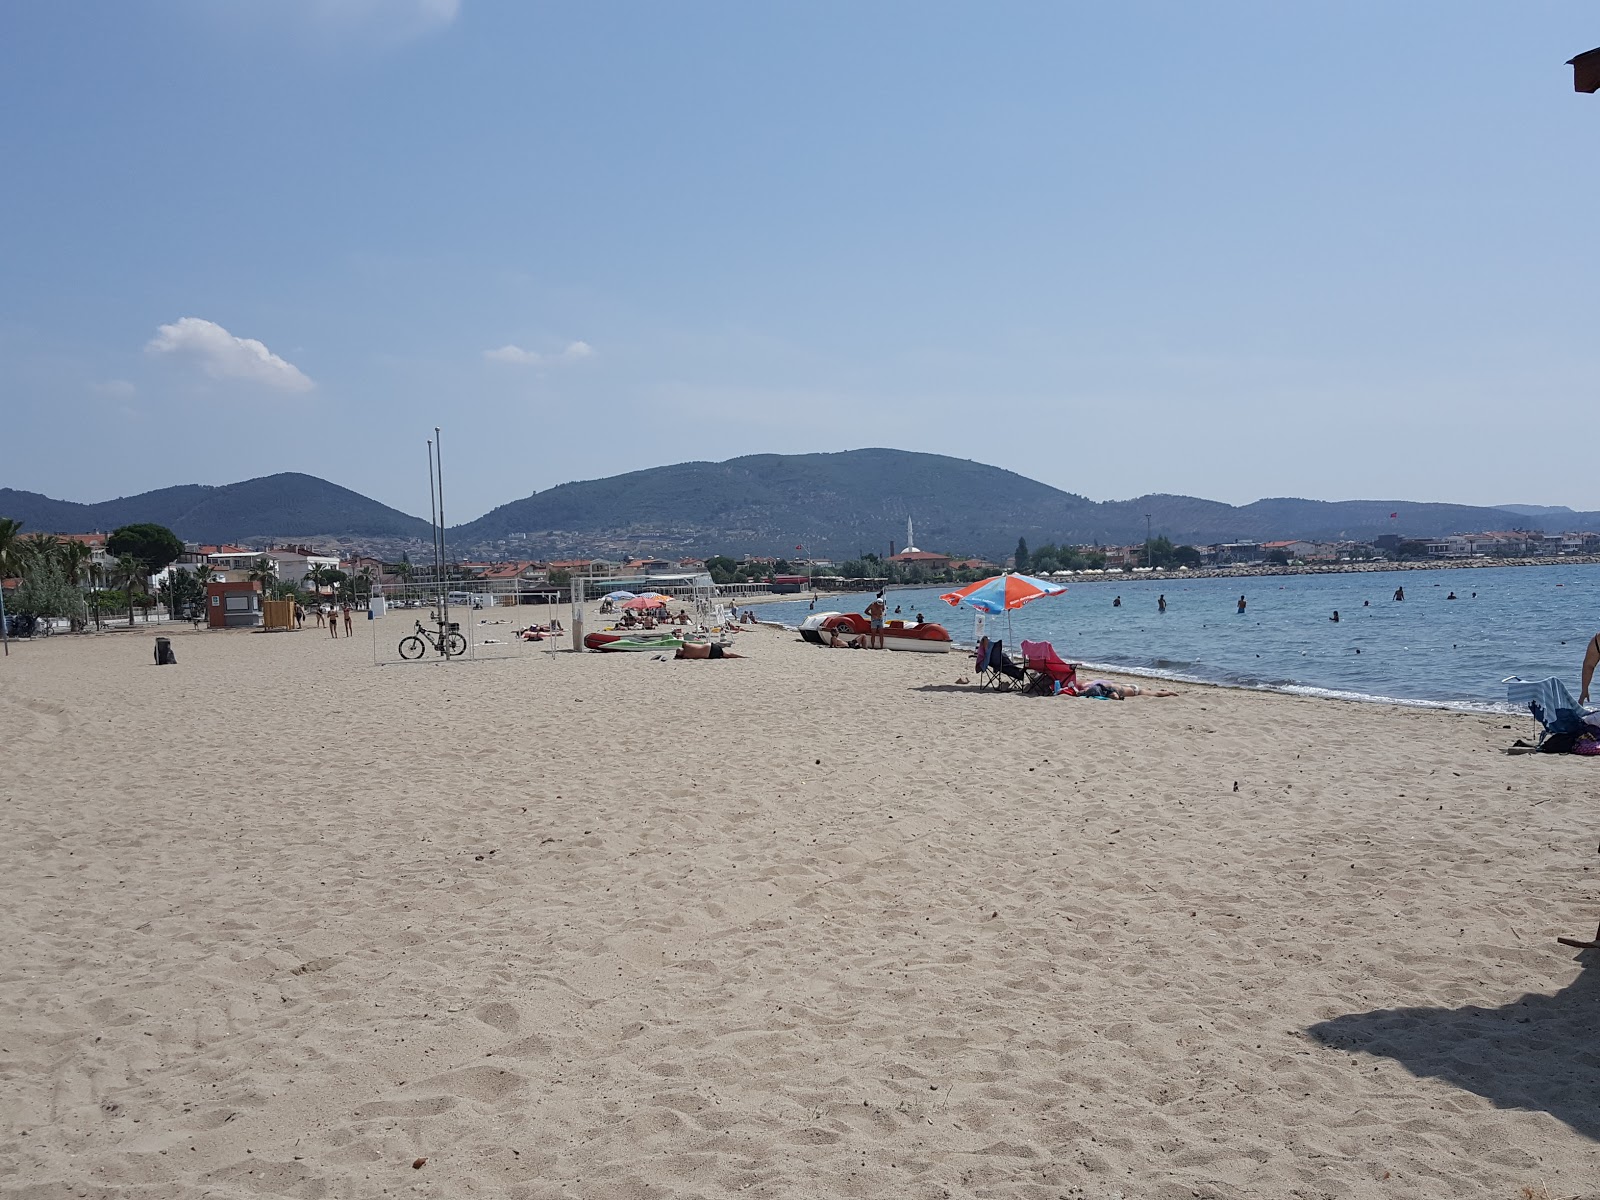 Foto af Oren beach - populært sted blandt afslapningskendere